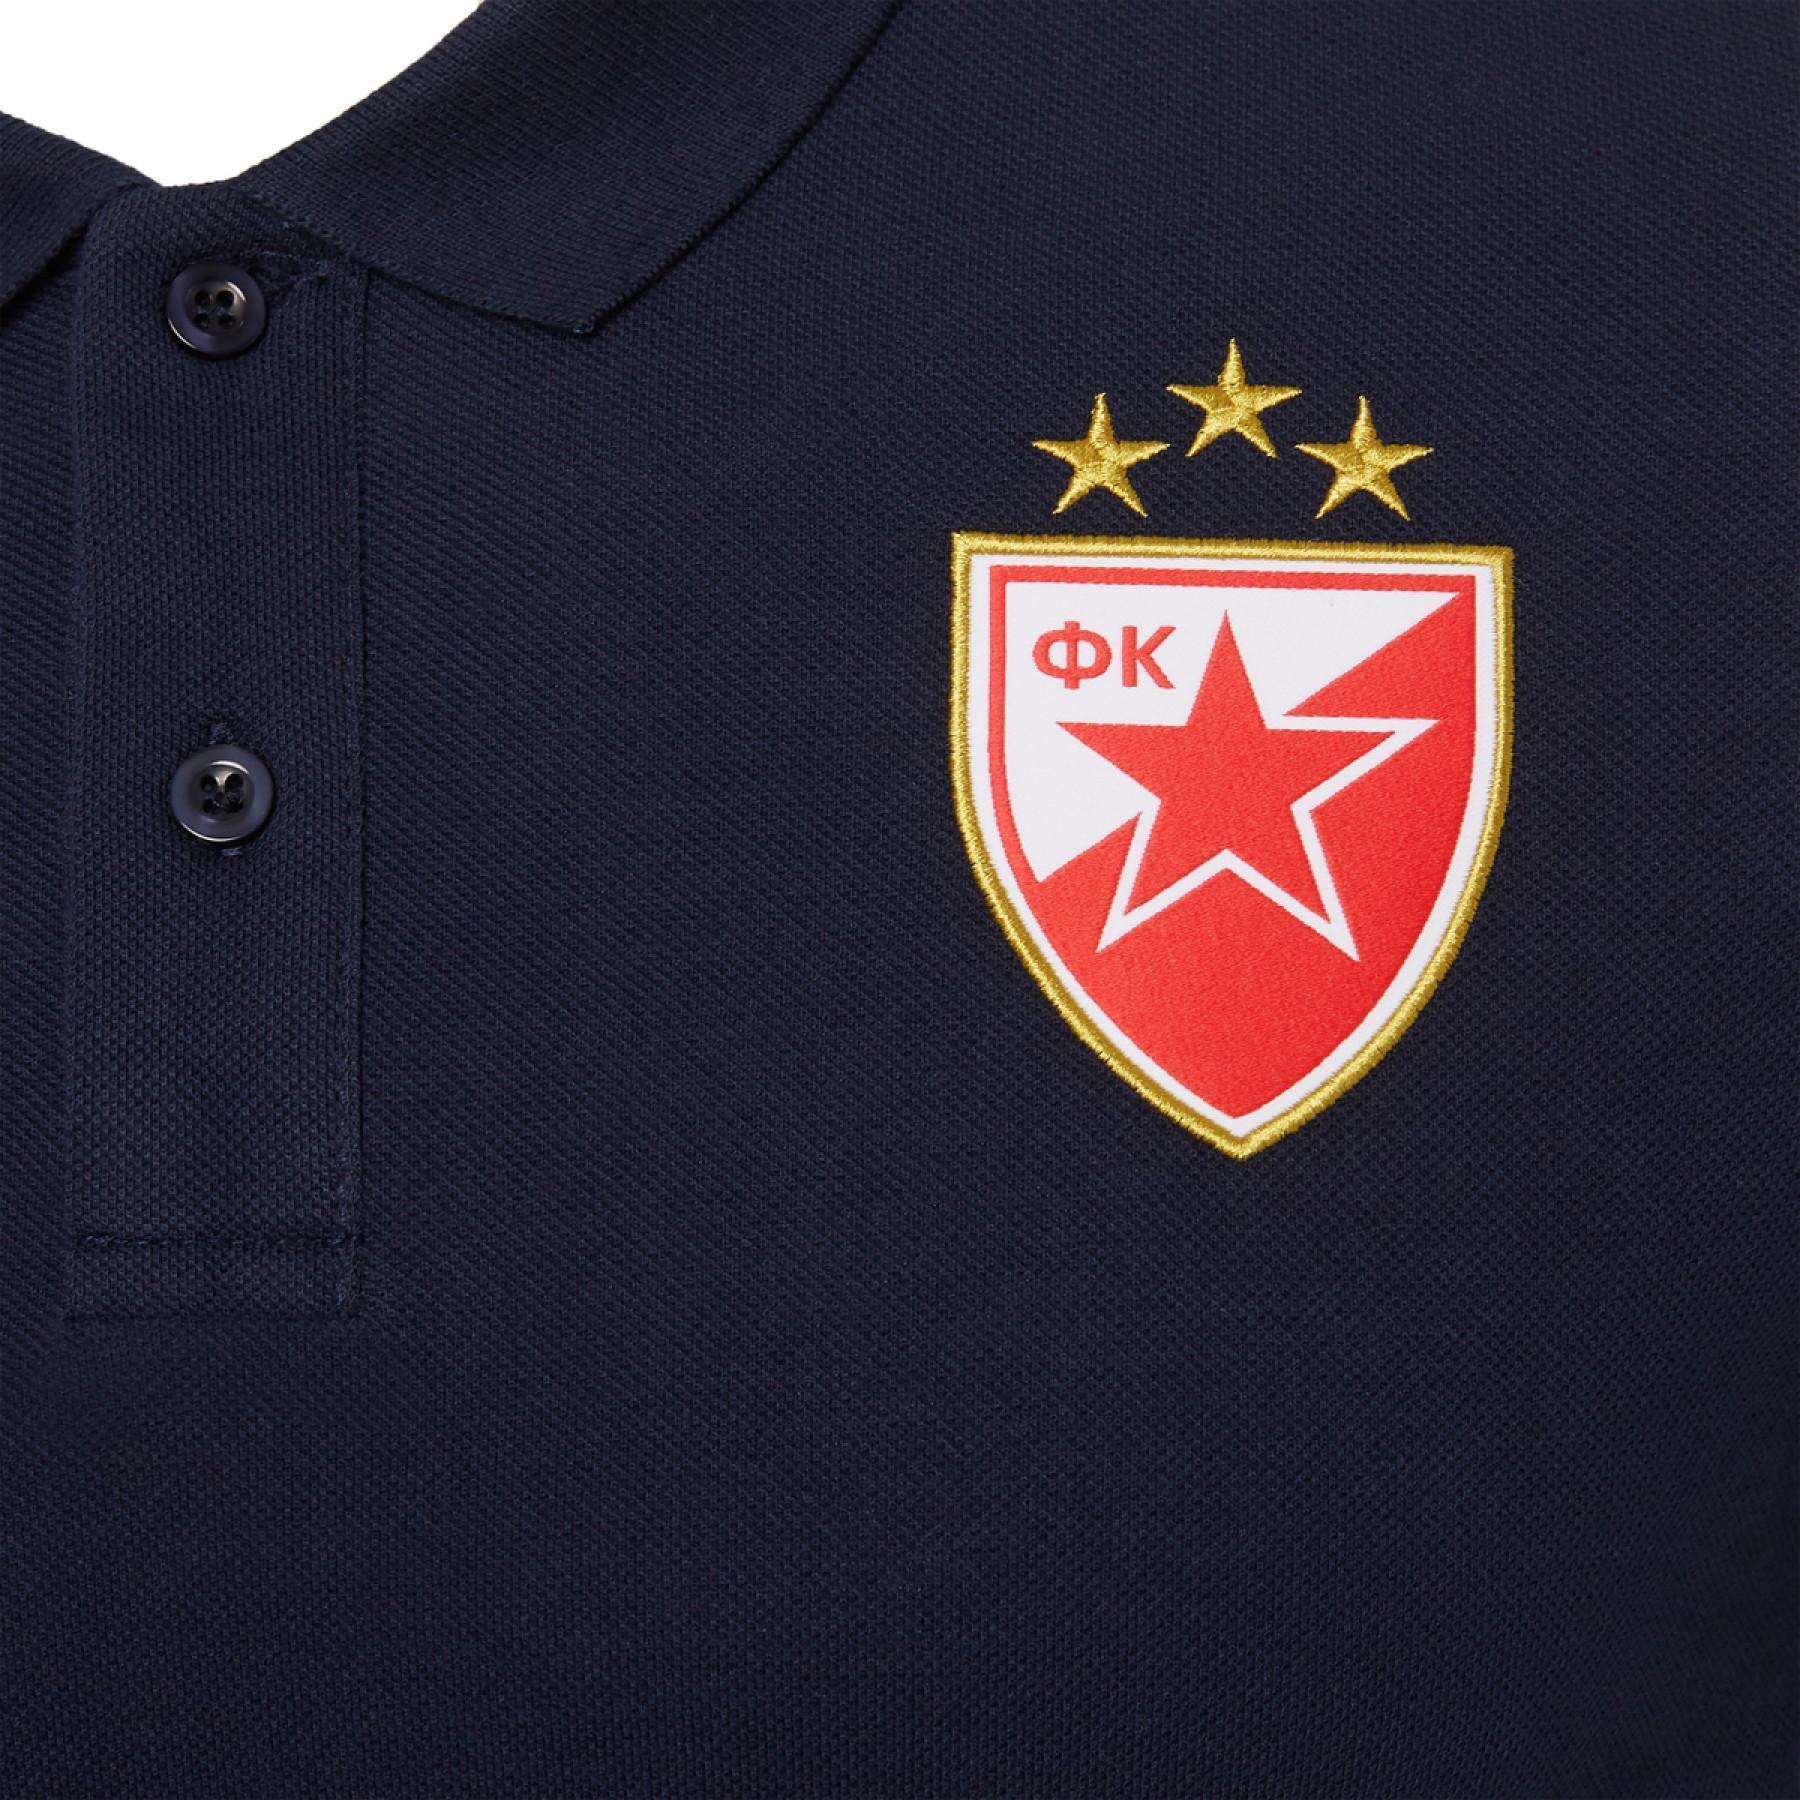 Polo personale Star Belgrade 2020/21